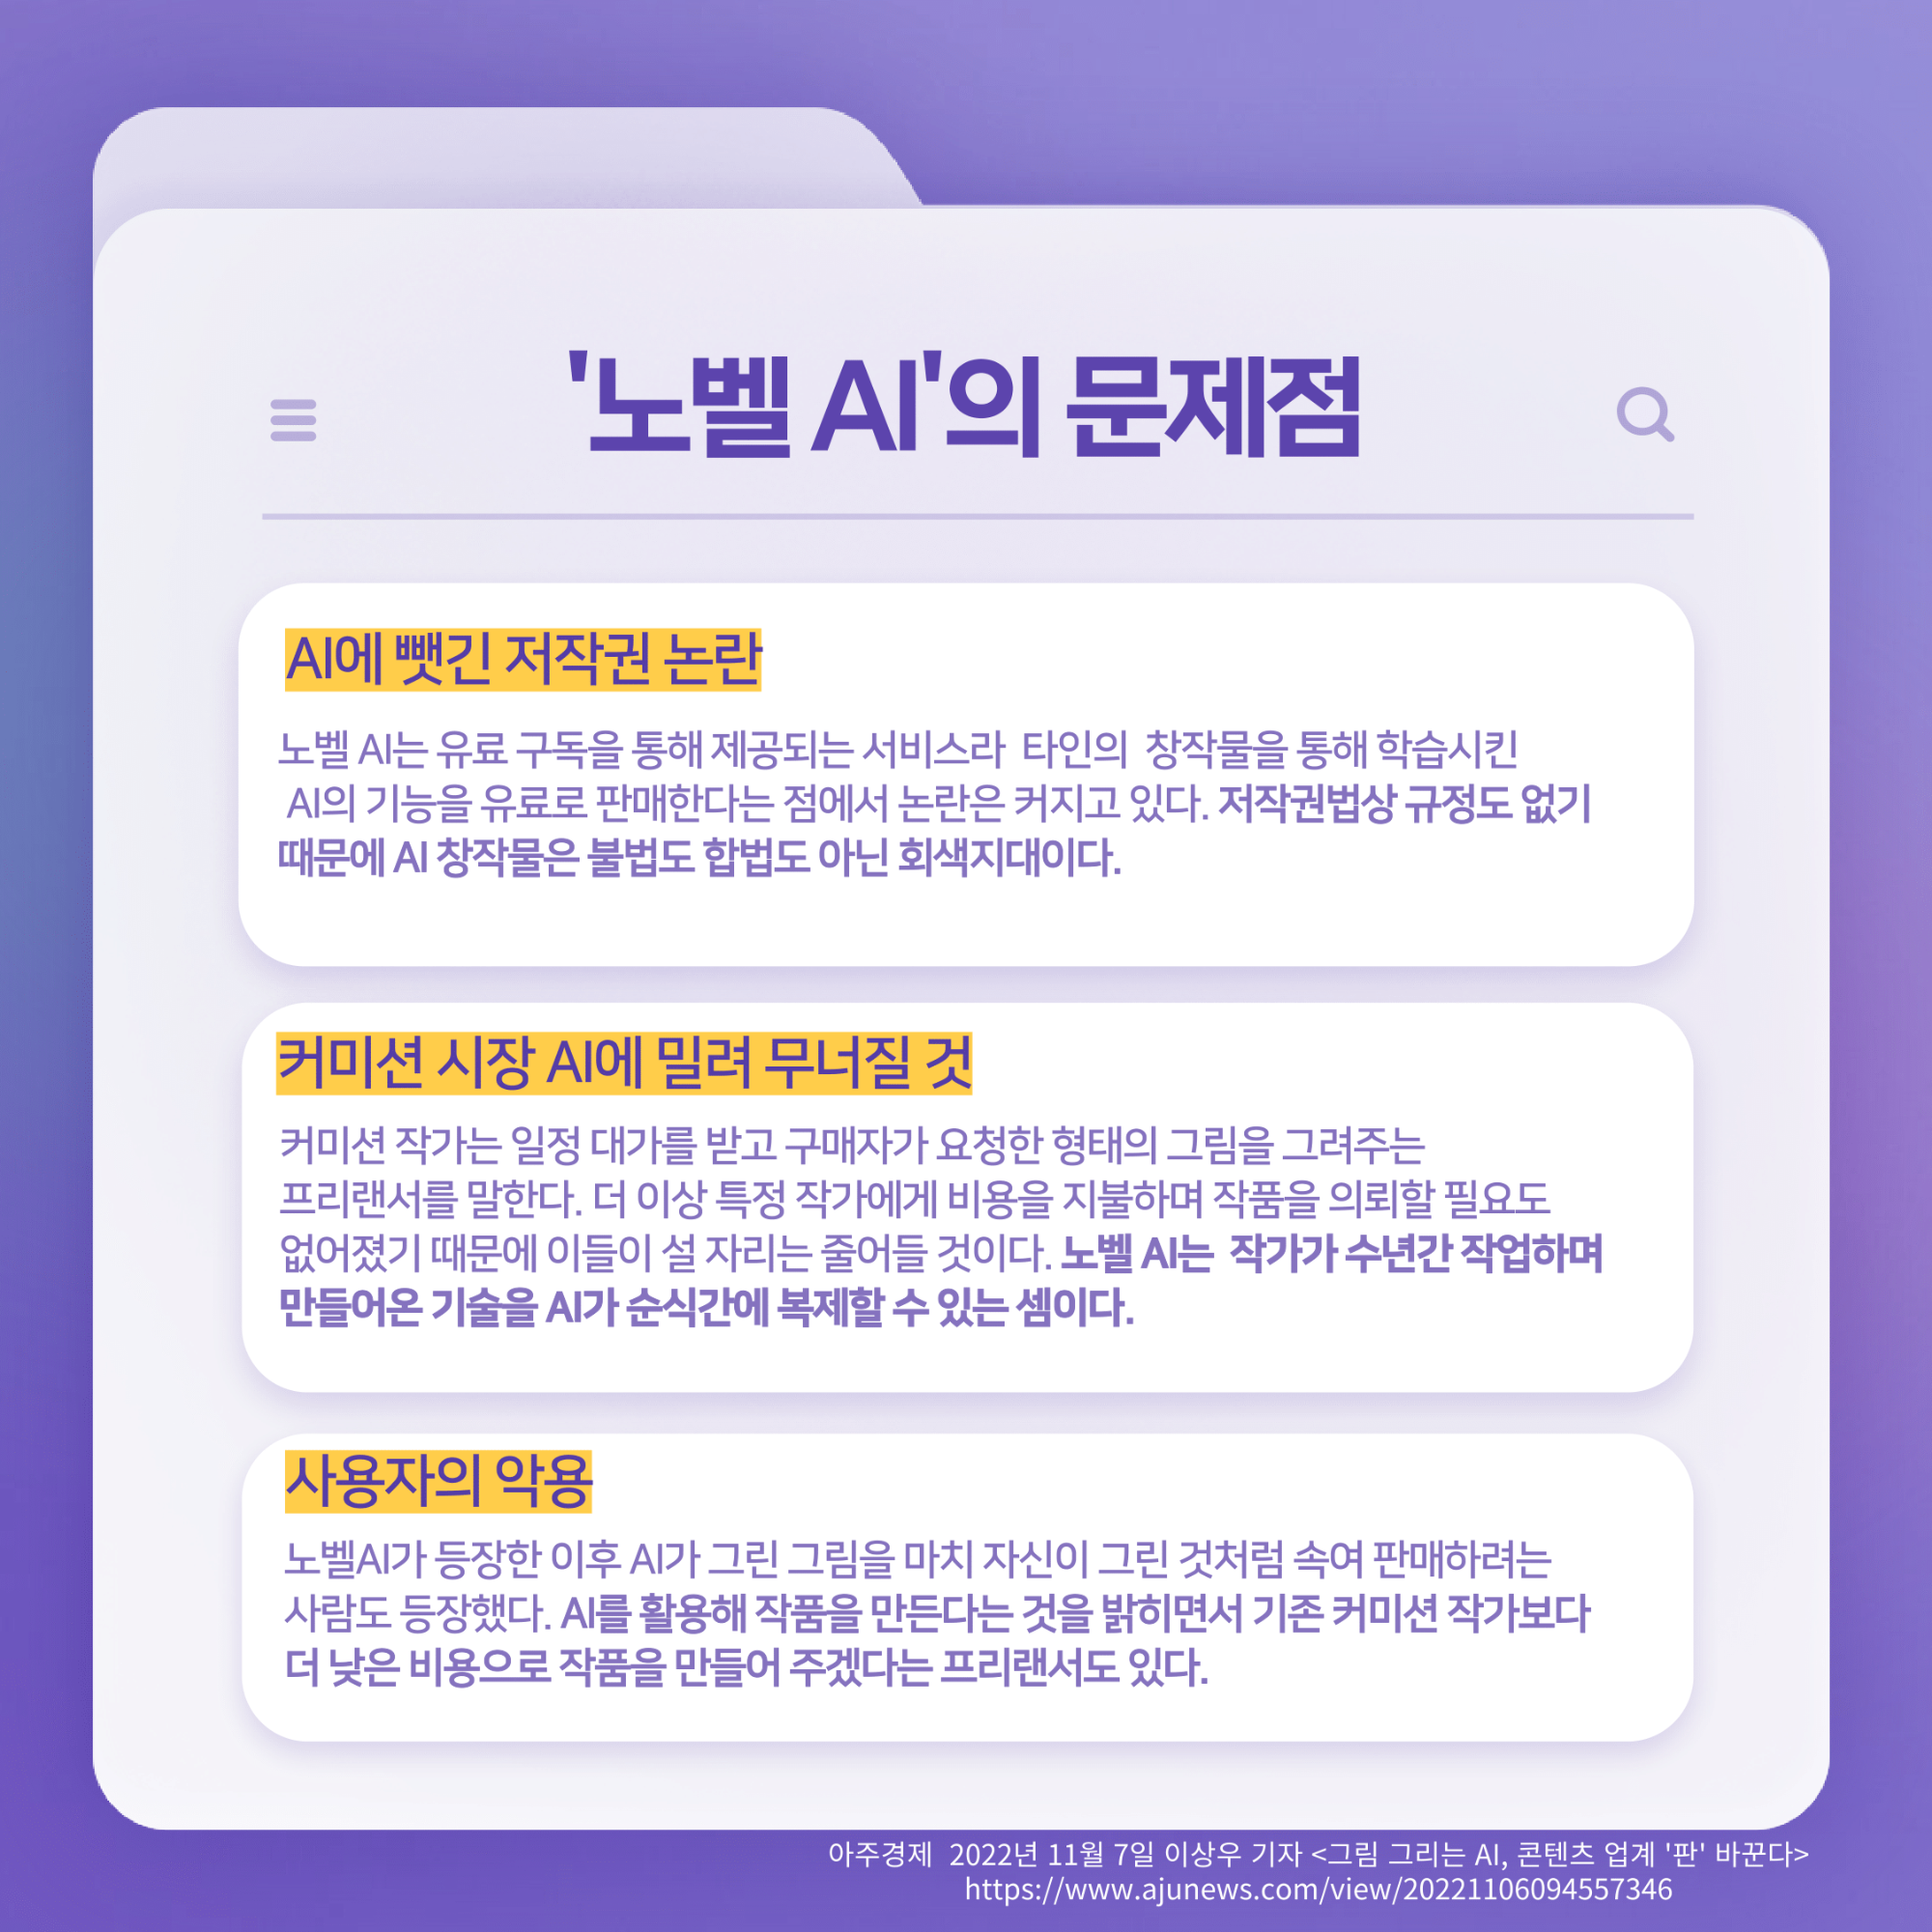 167호 K-웹툰의 노동 문제 심각성-3.png